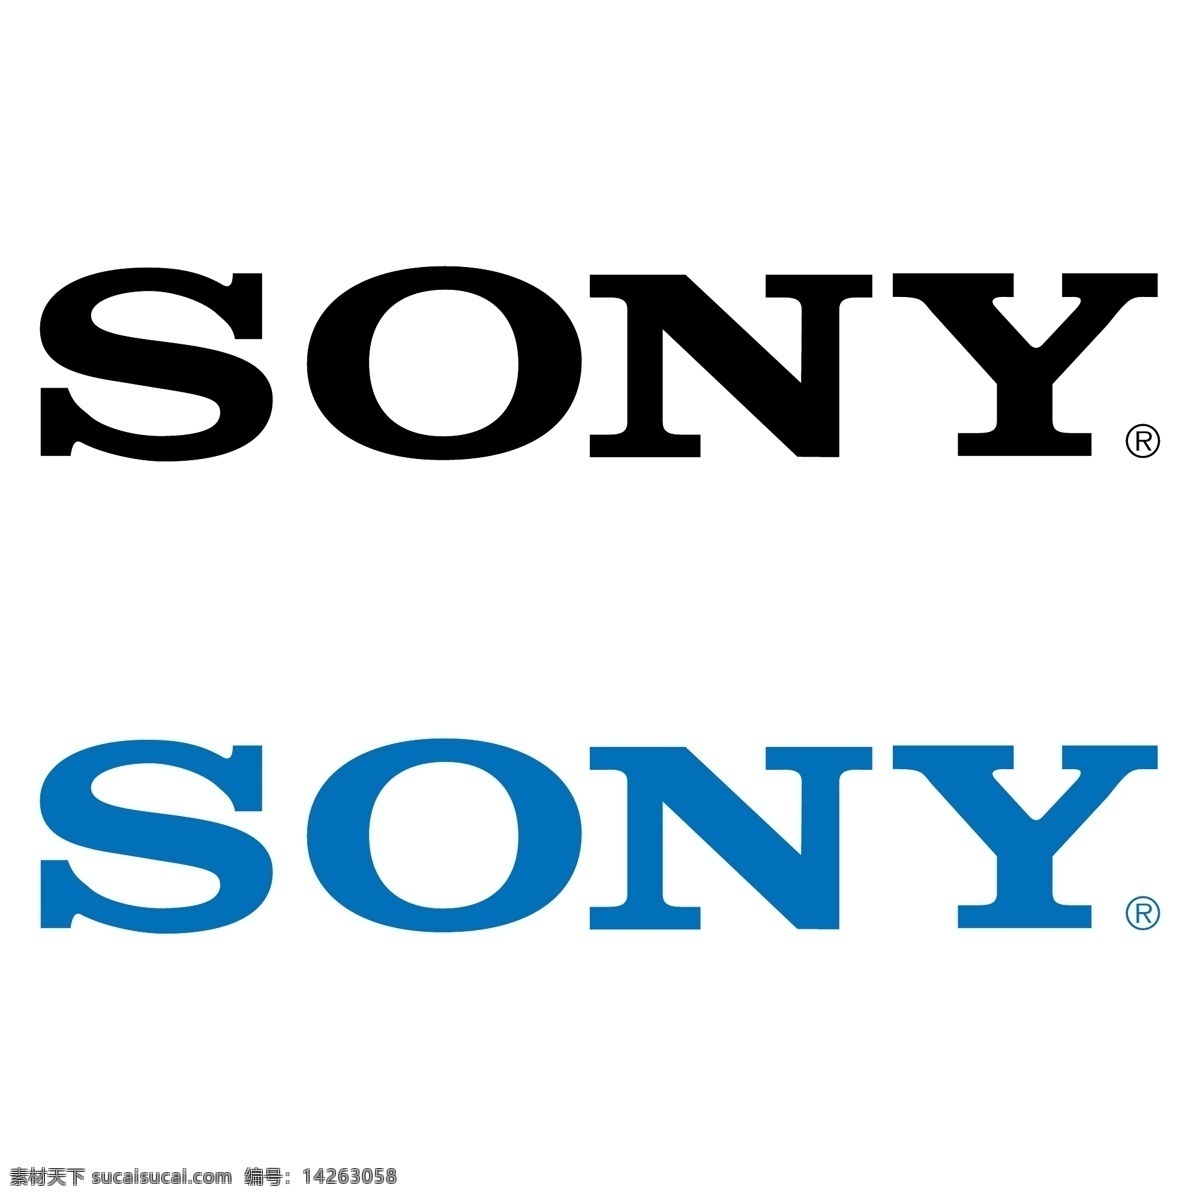 索尼图标 索尼标志 索尼符号 索尼手机图标 索尼 手机 logo 索尼手机标志 索尼logo 索尼广告 sony sony标志 sony图标 底纹边框 其他素材